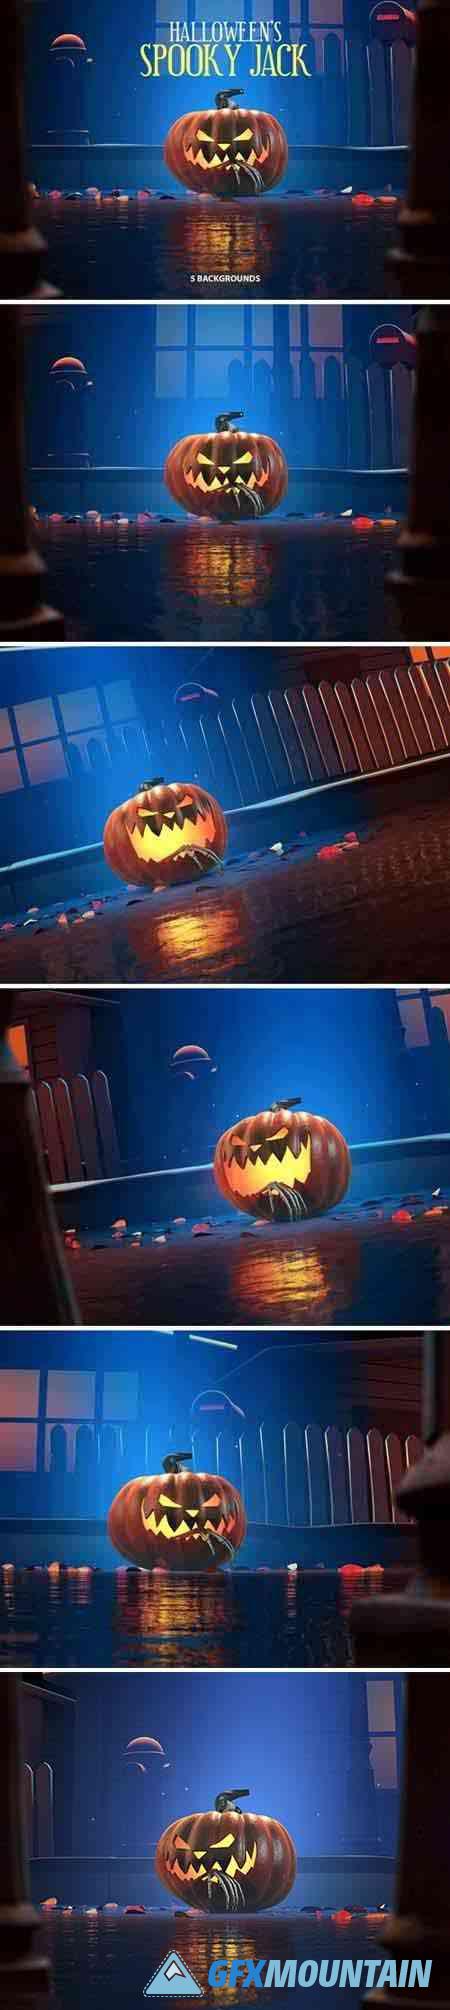 Halloween Spooky Jack